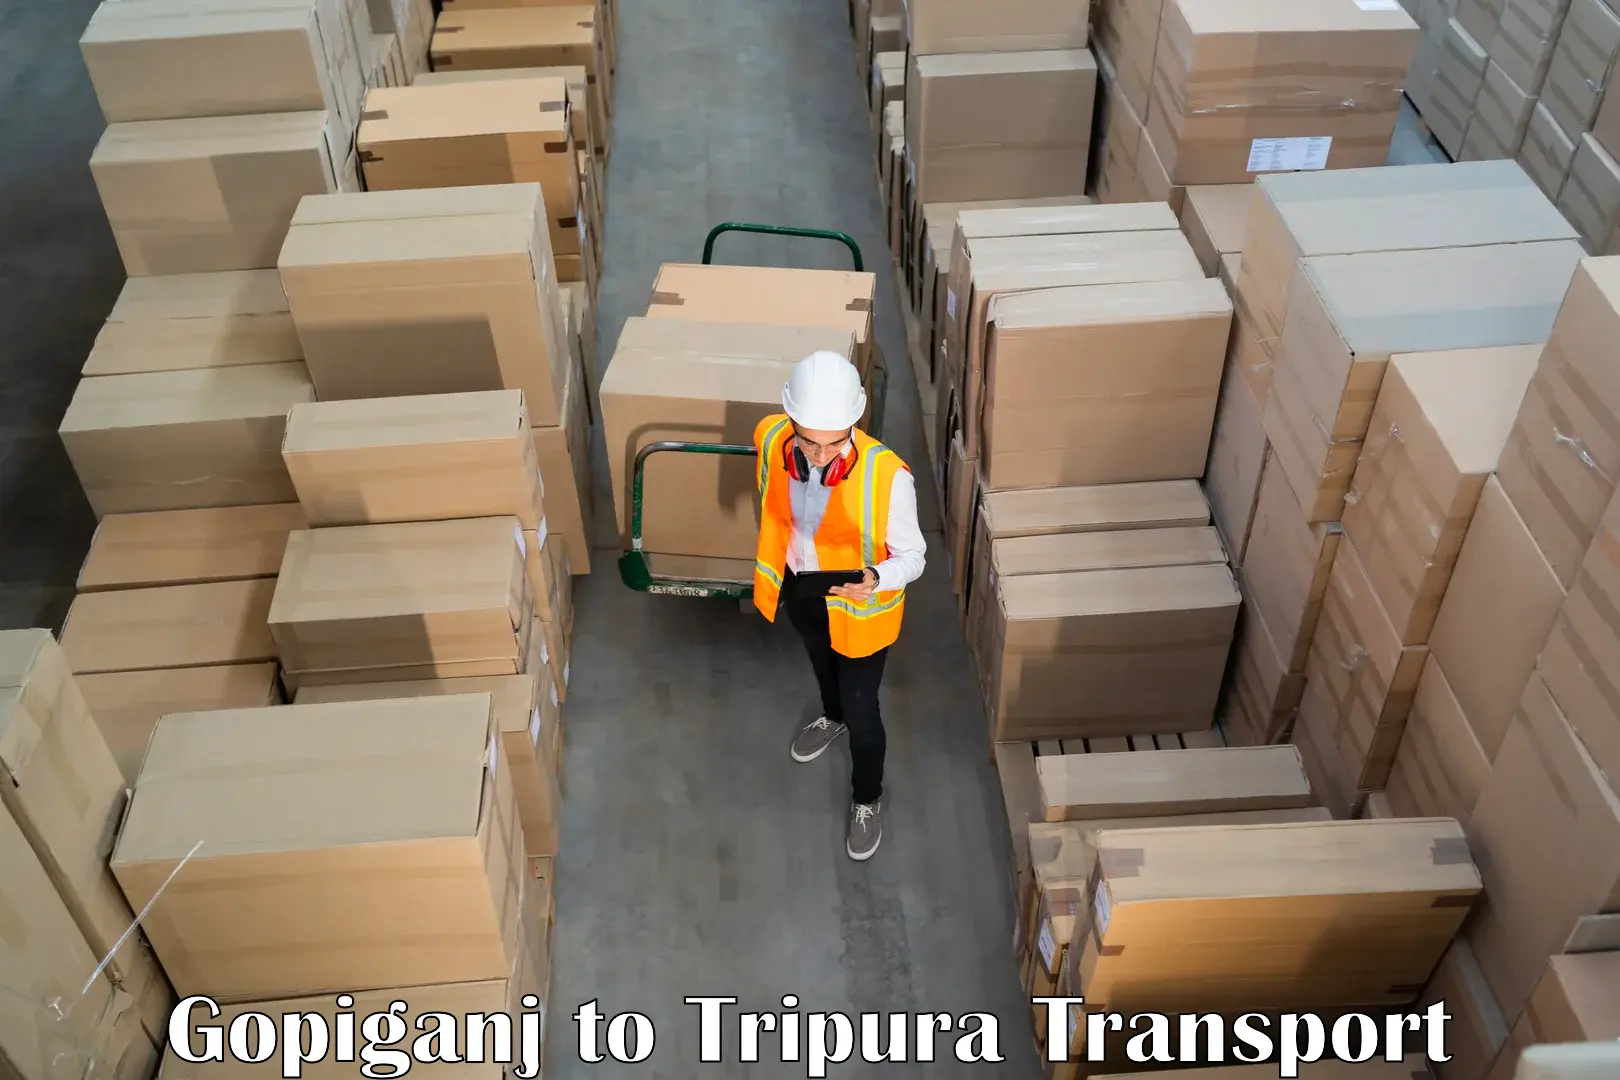 Commercial transport service Gopiganj to Udaipur Tripura